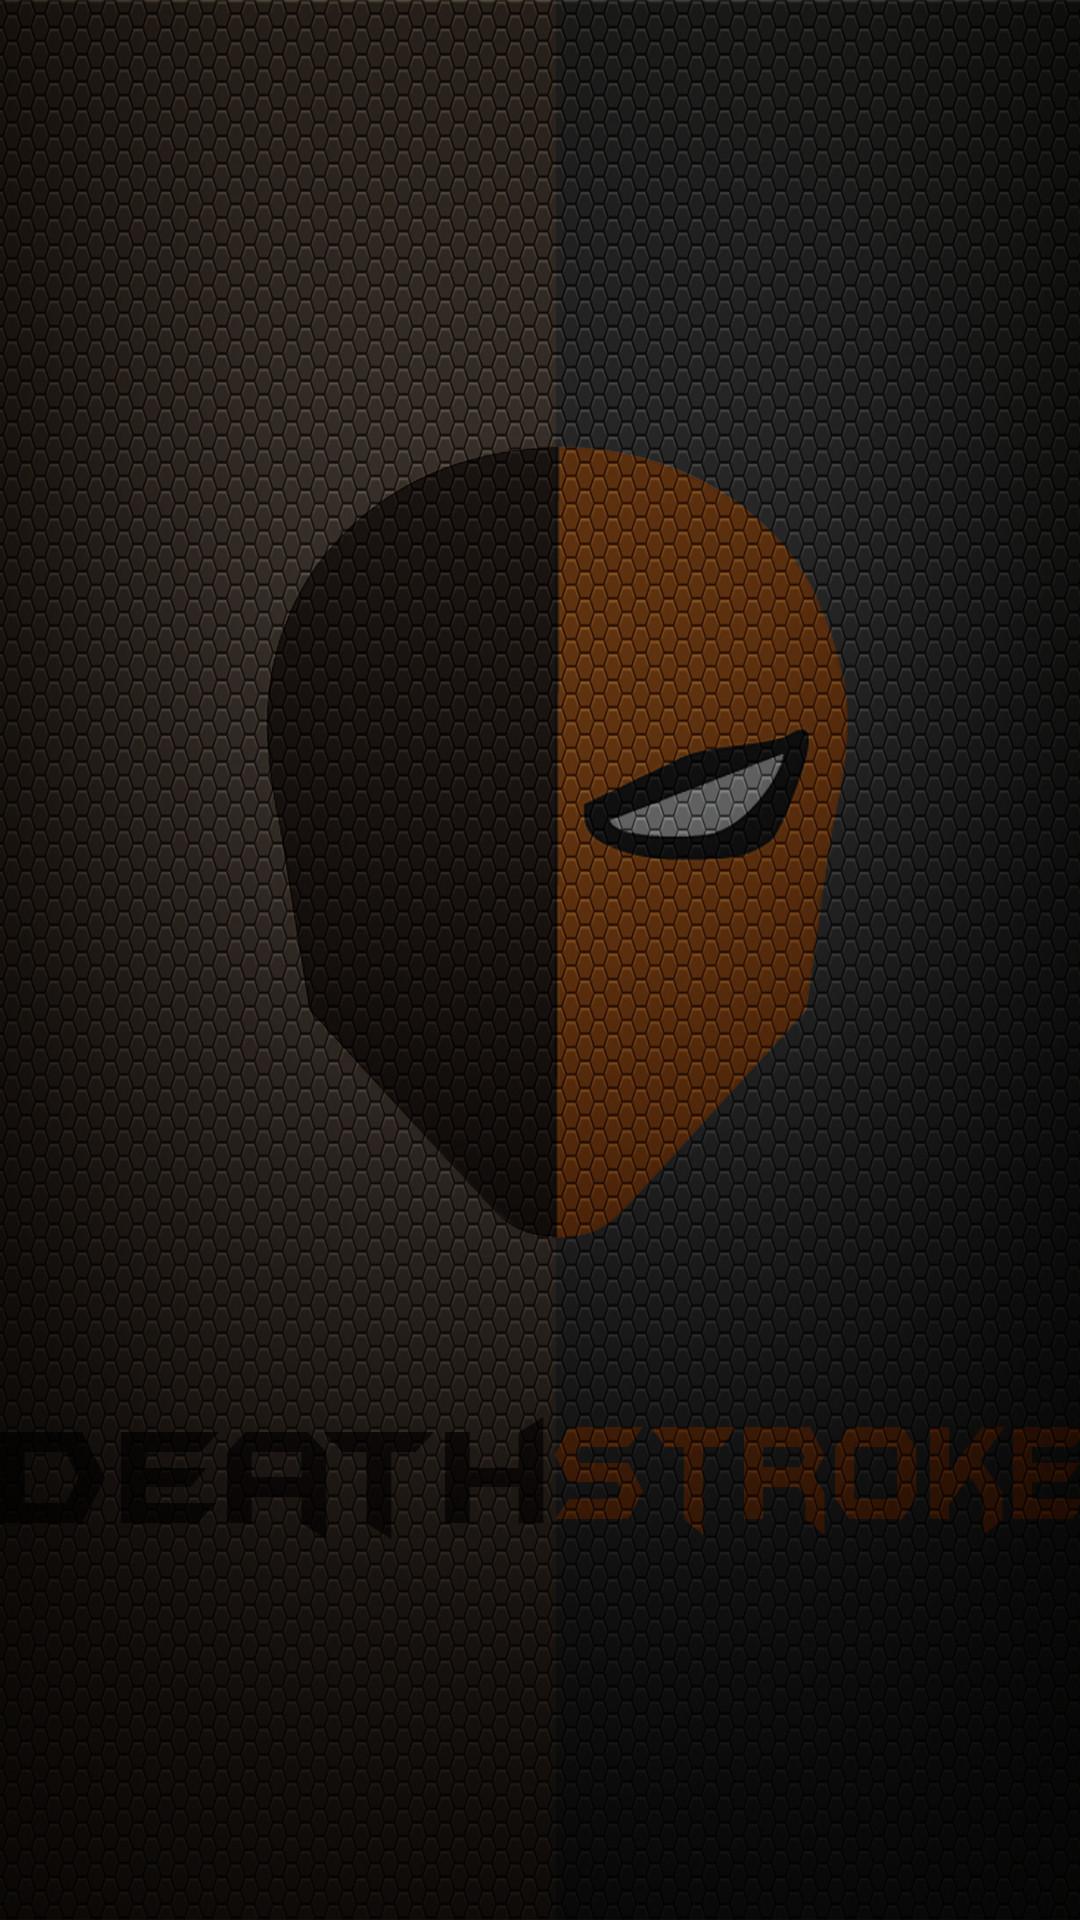 deathstroke logo wallpaper